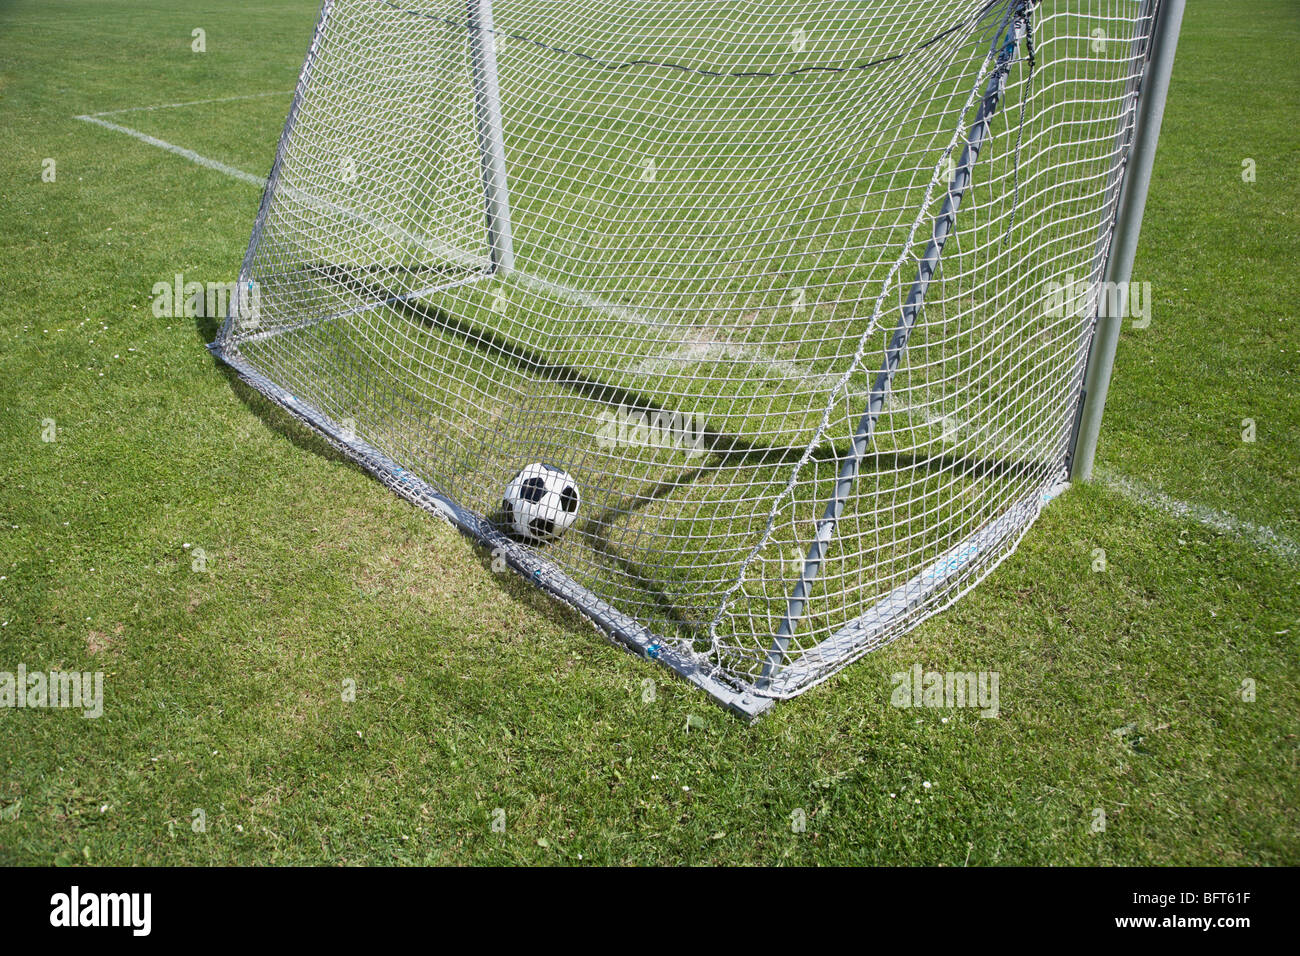 Soccer Ball in Net Stock Photo